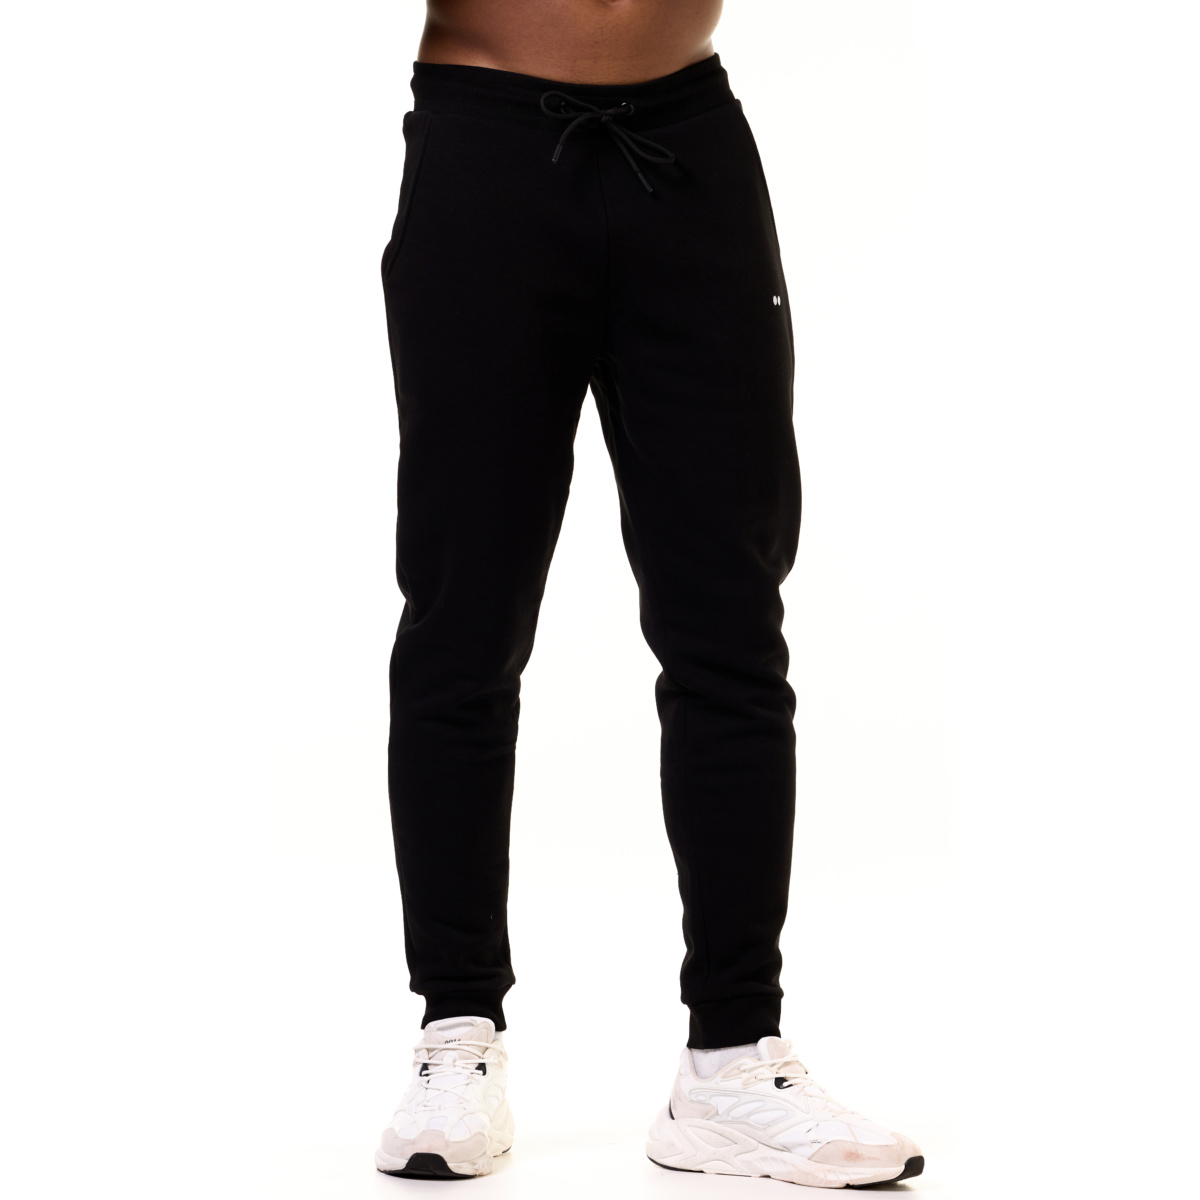 Comfy Sweatpants Black - Man 